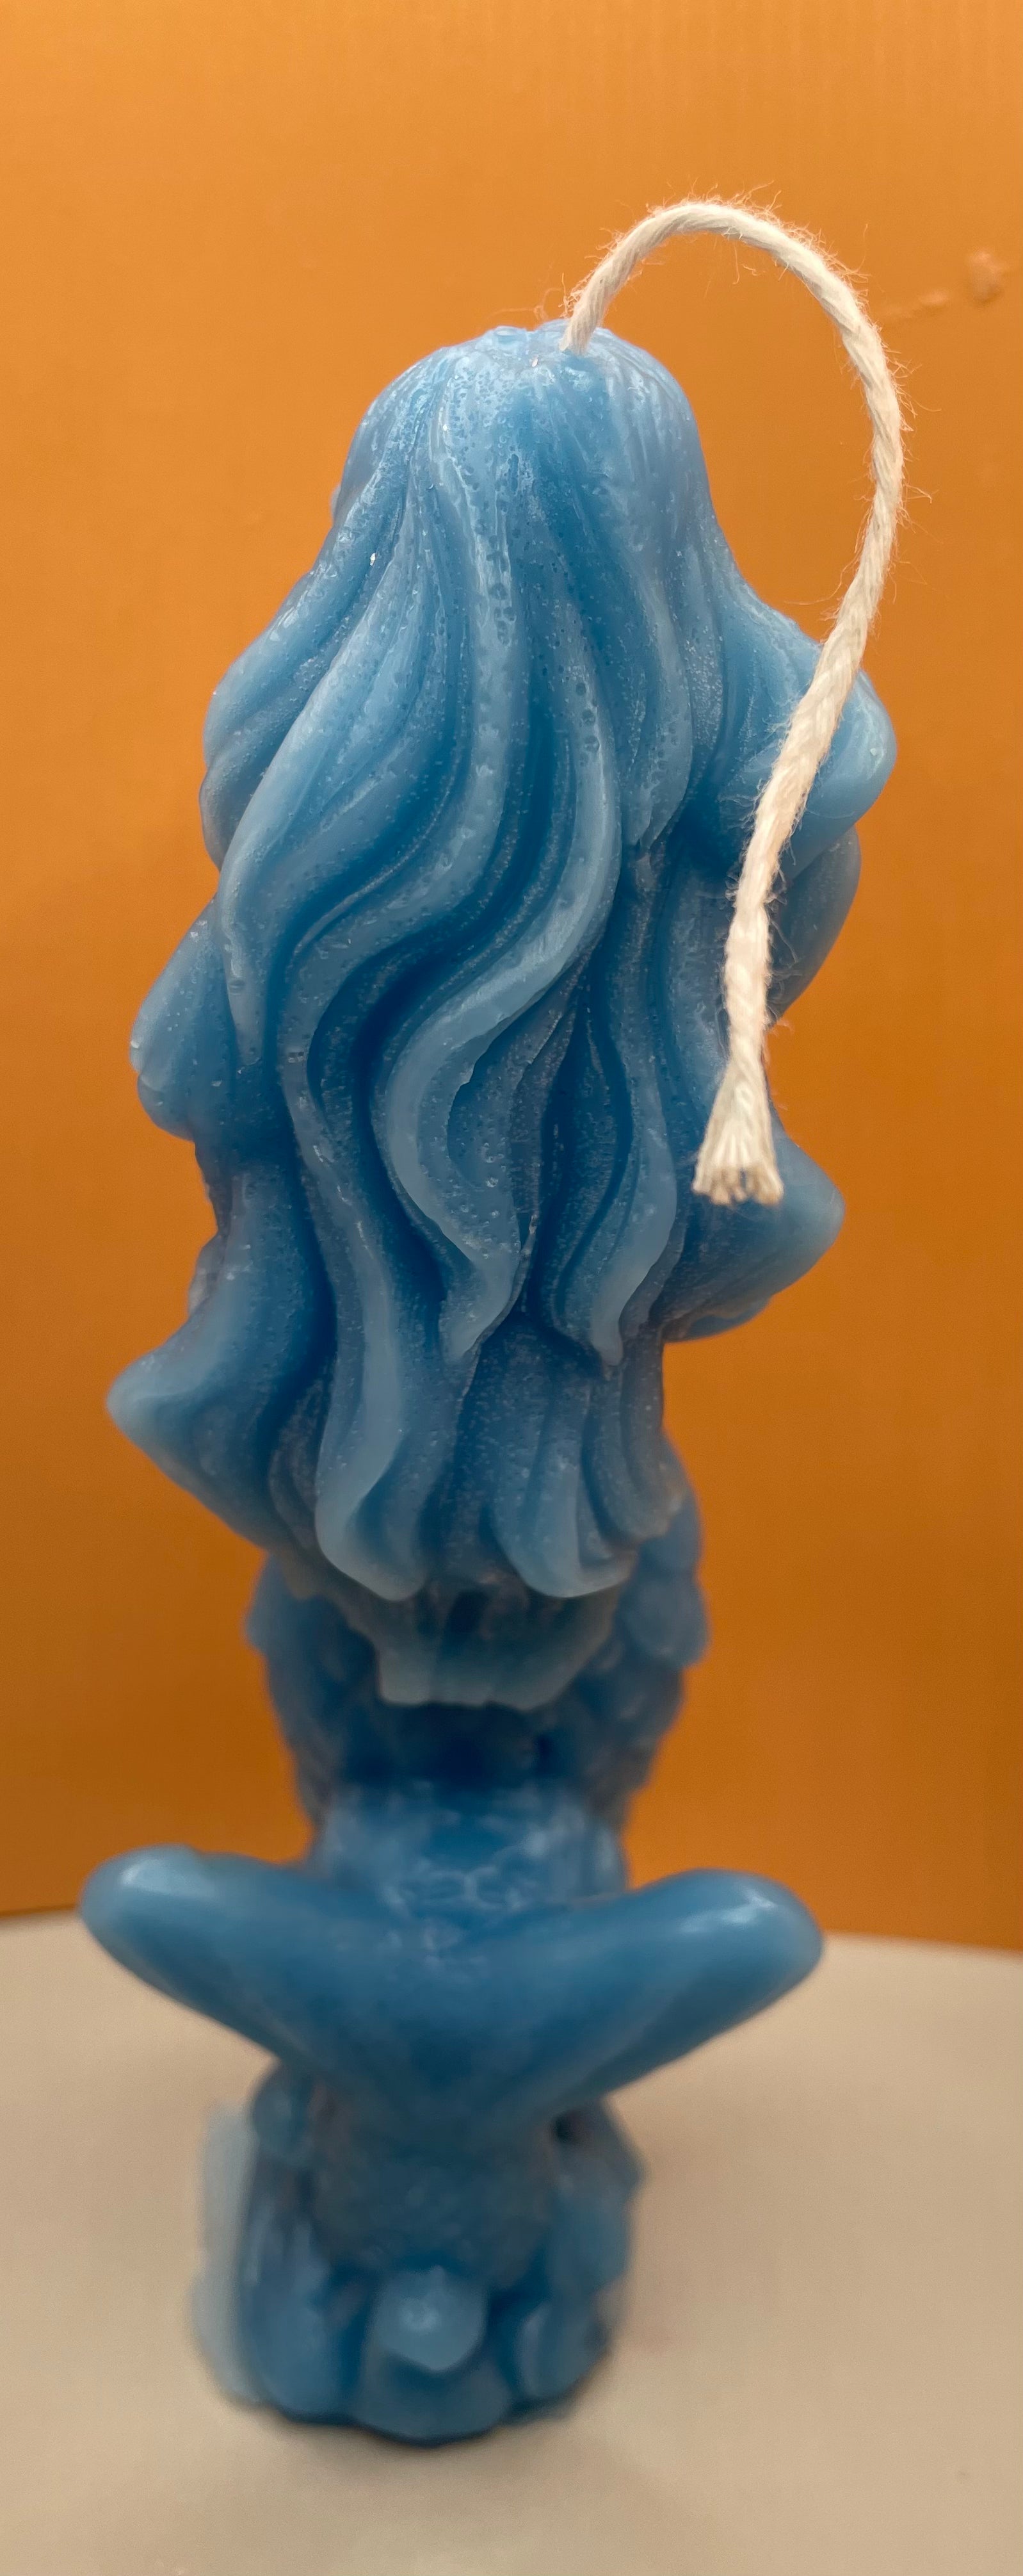 Back of Blue Mermaid